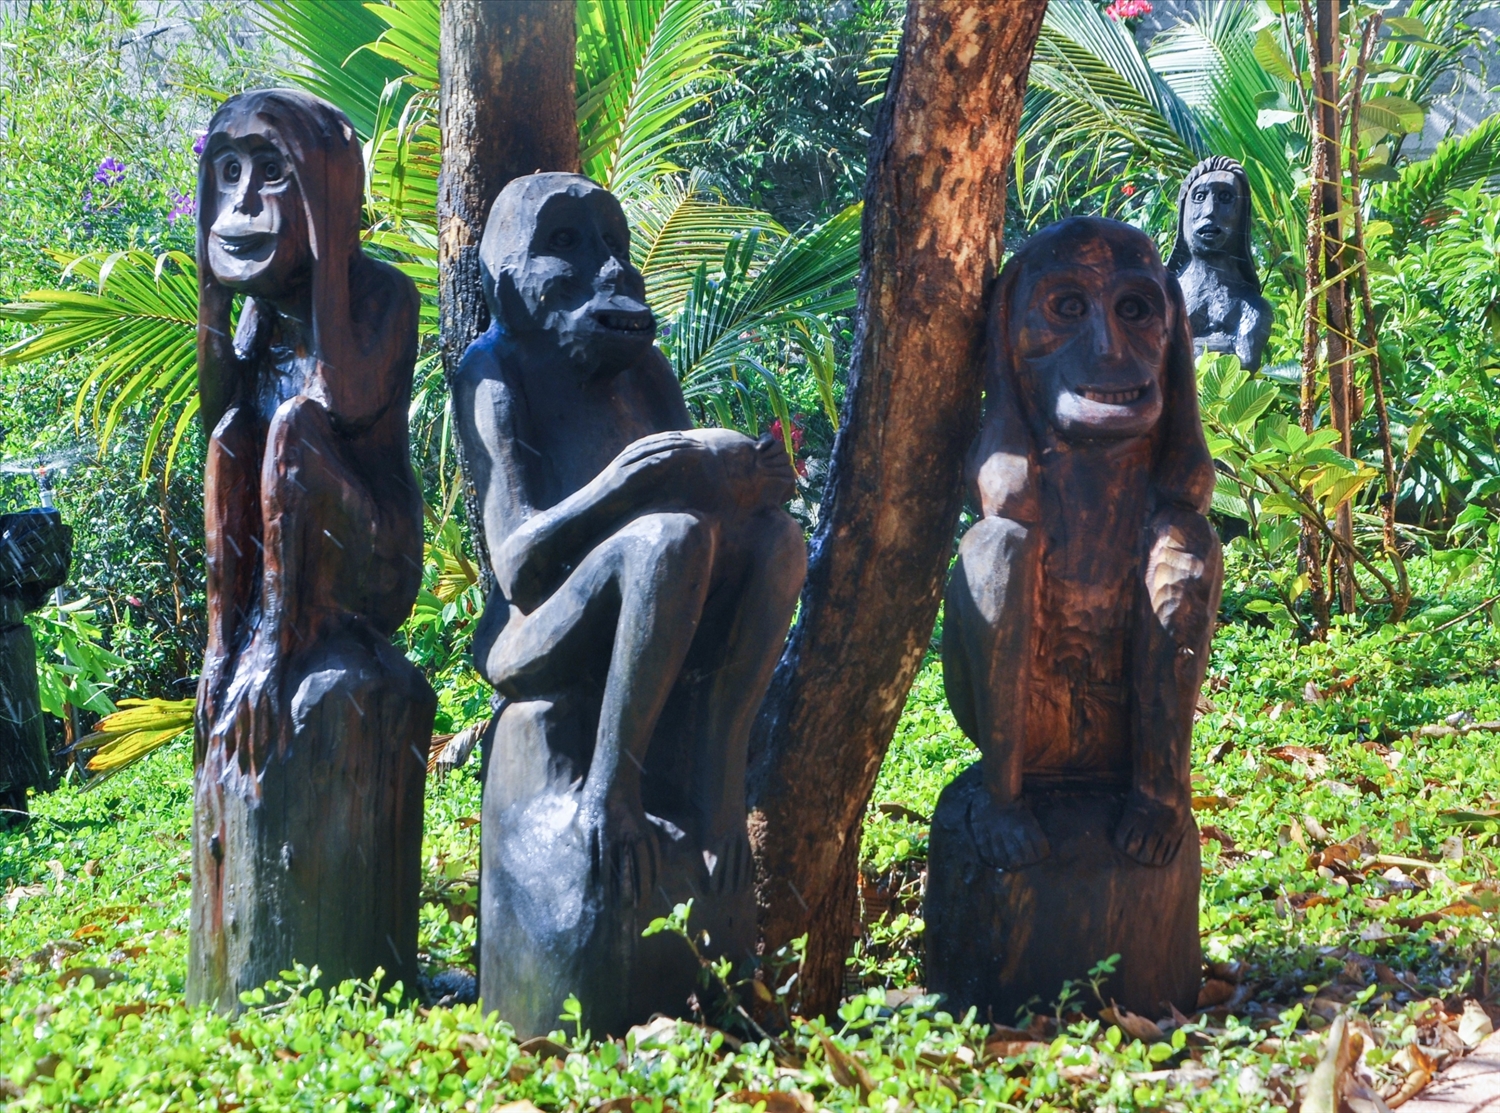 ượng gỗ dân gian Tây Nguyên được dùng trang trí, giới thiệu với du khách tại Khu du lịch Ko Tam. Ảnh: Hữu Hùng